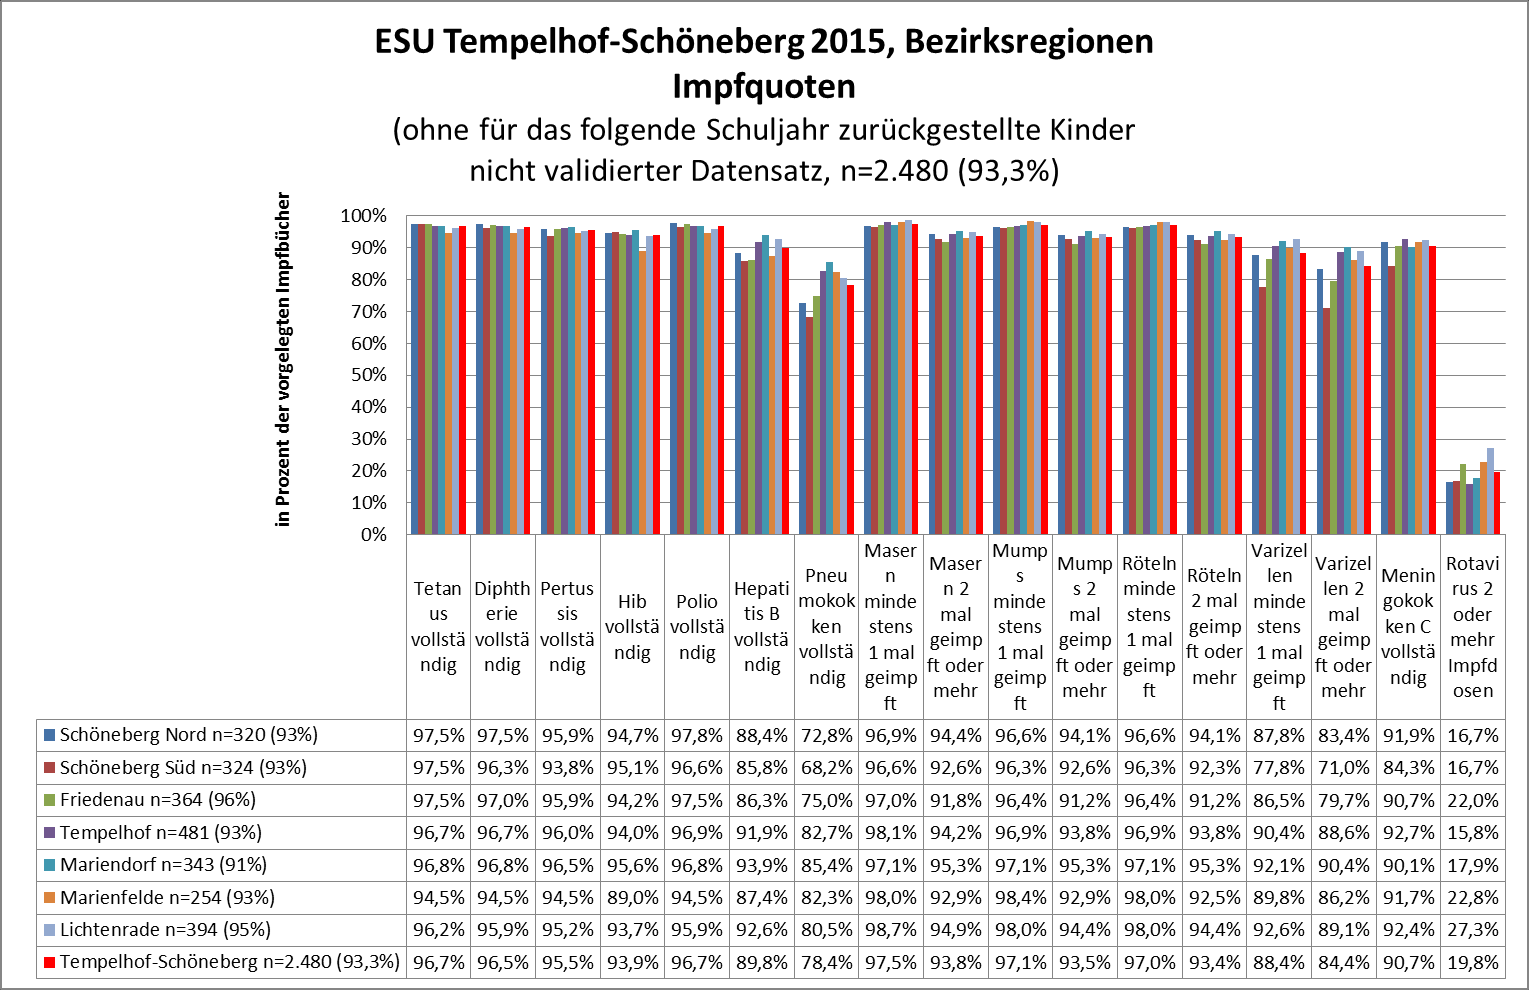 Impfquoten im Bezirk Tempelhof-Schöneberg, ESU 2009-2015